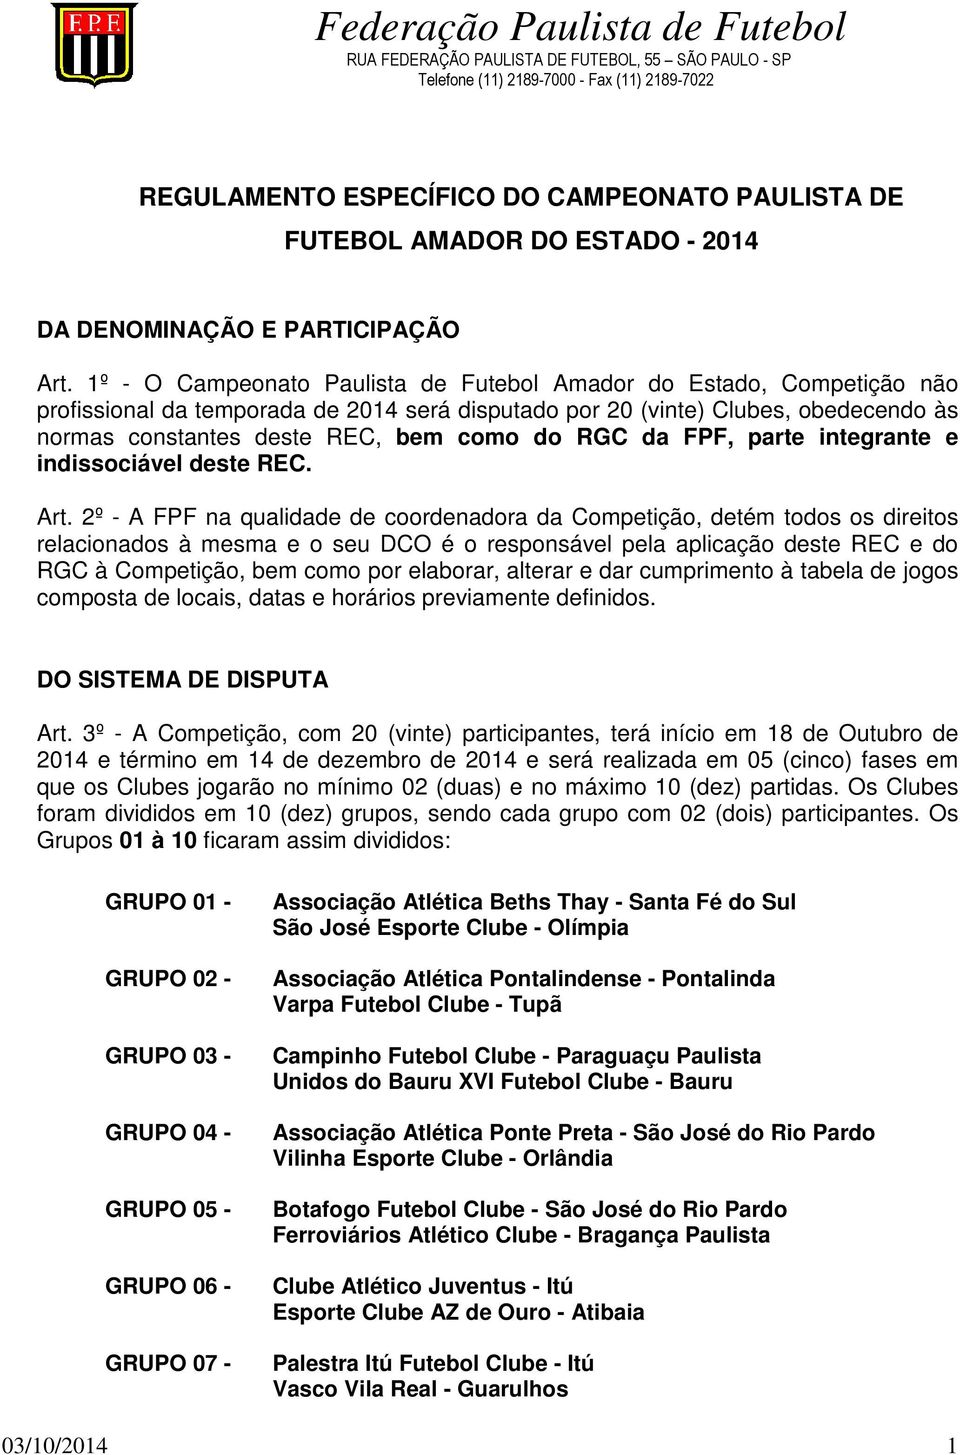 1º - O Campeonato Paulista de Futebol Amador do Estado, Competição não profissional da temporada de 2014 será disputado por 20 (vinte) Clubes, obedecendo às normas constantes deste REC, bem como do